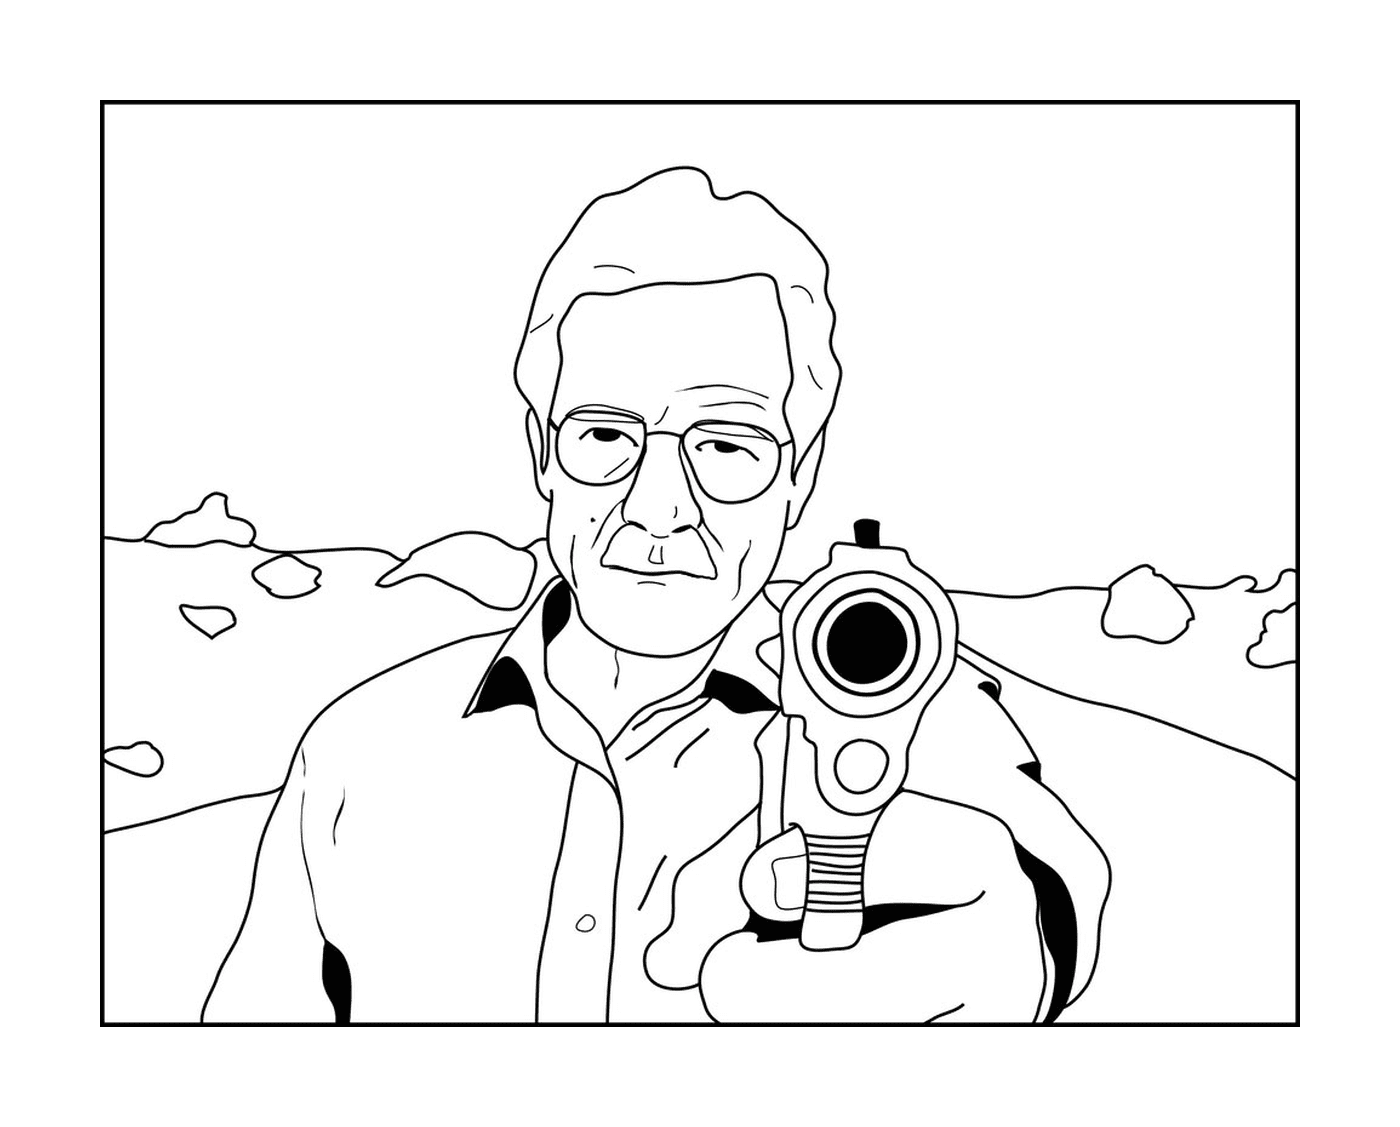  An older man holding a gun 